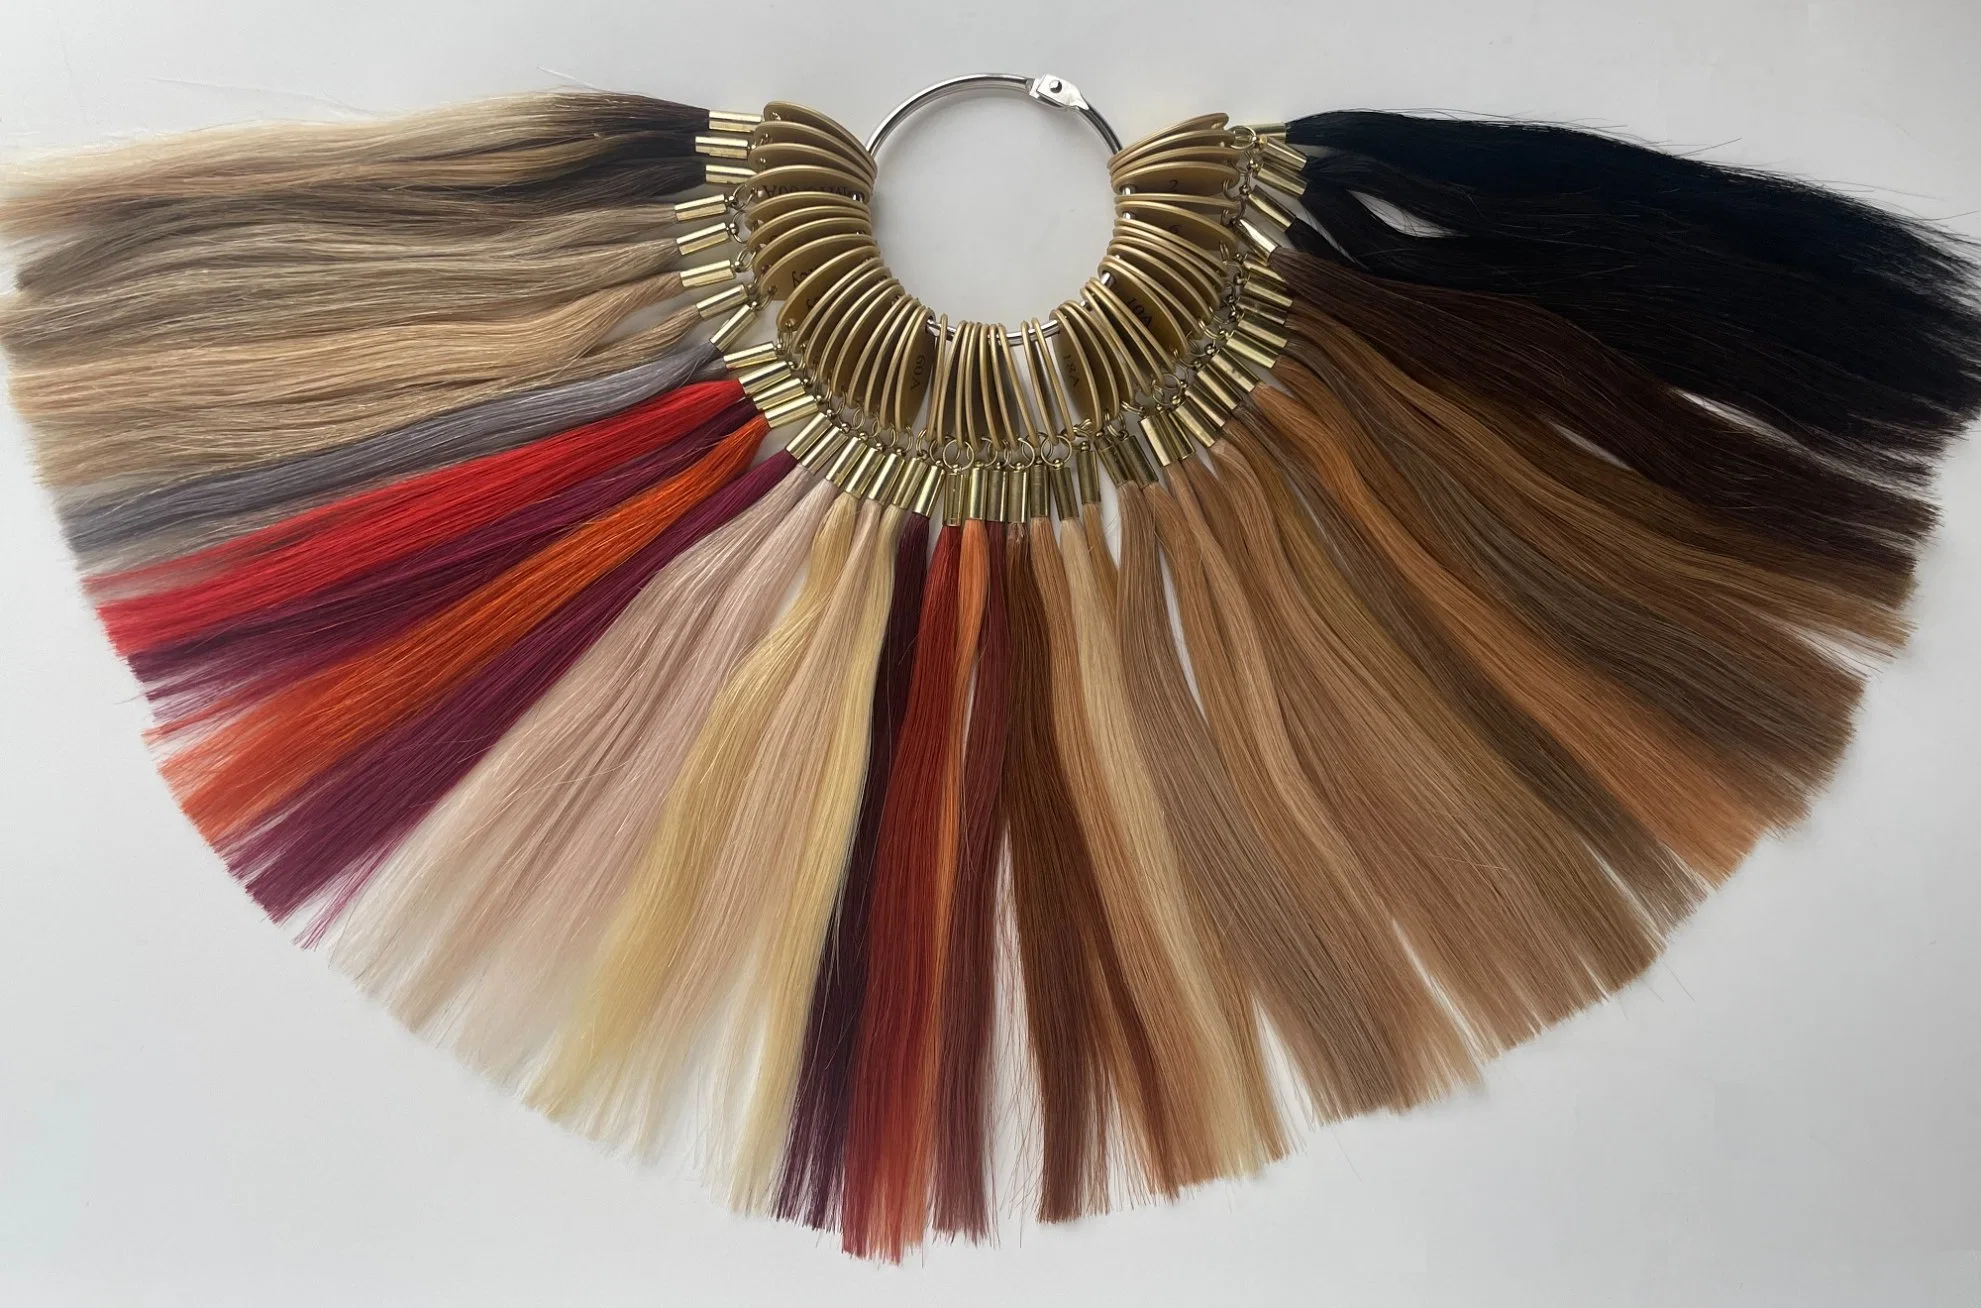 Curticles de qualidade Virgem Aviva alinhados fita de Balayage do cabelo humano humano Extensão de cabelo (AV-TP14-ML009)